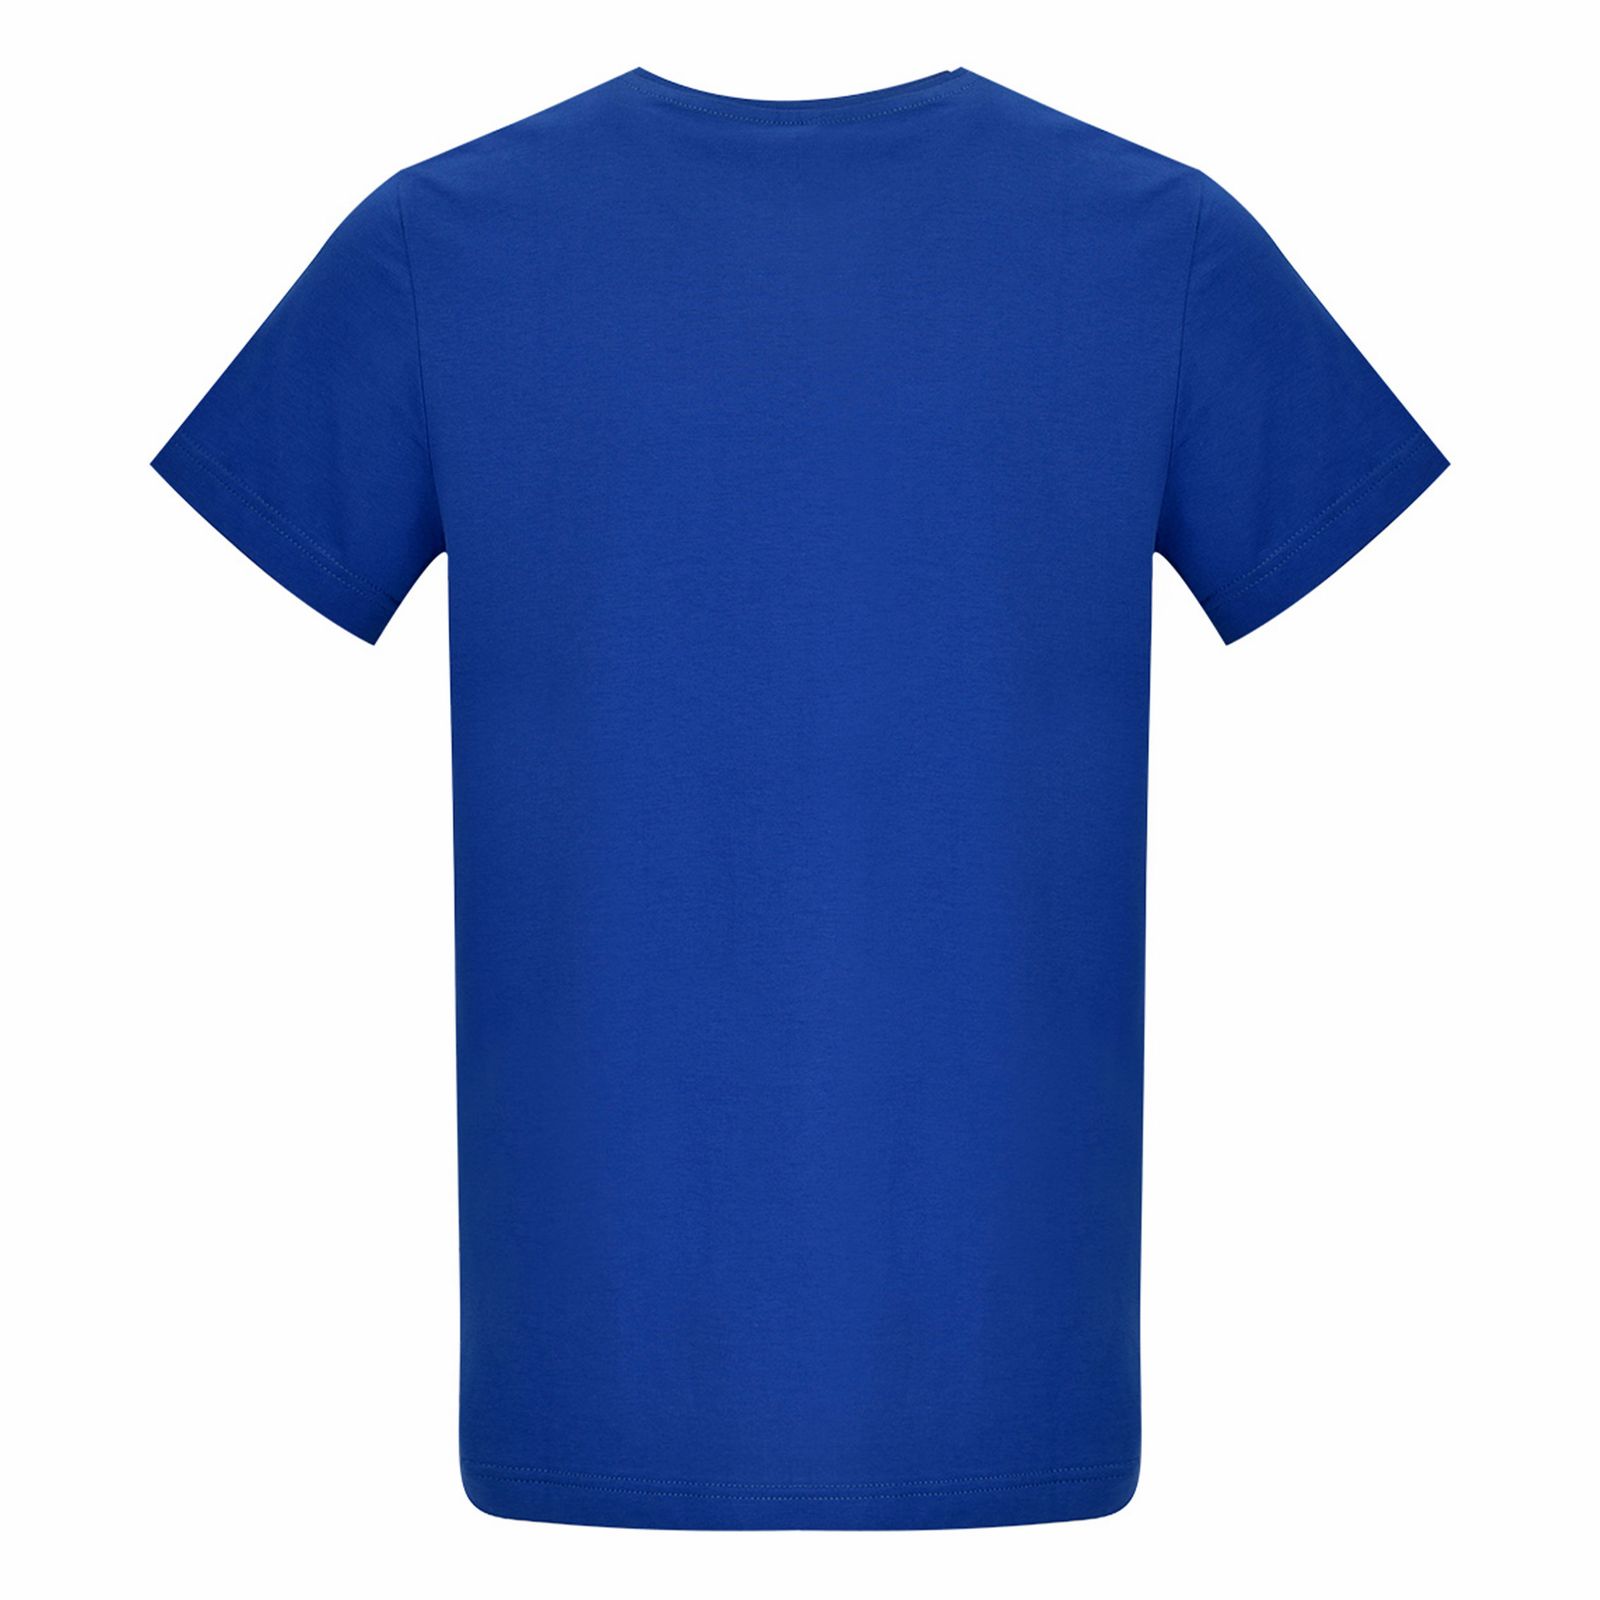 تی شرت آستین کوتاه مردانه بادی اسپینر مدل 11964737 کد 3 رنگ آبی -  - 3